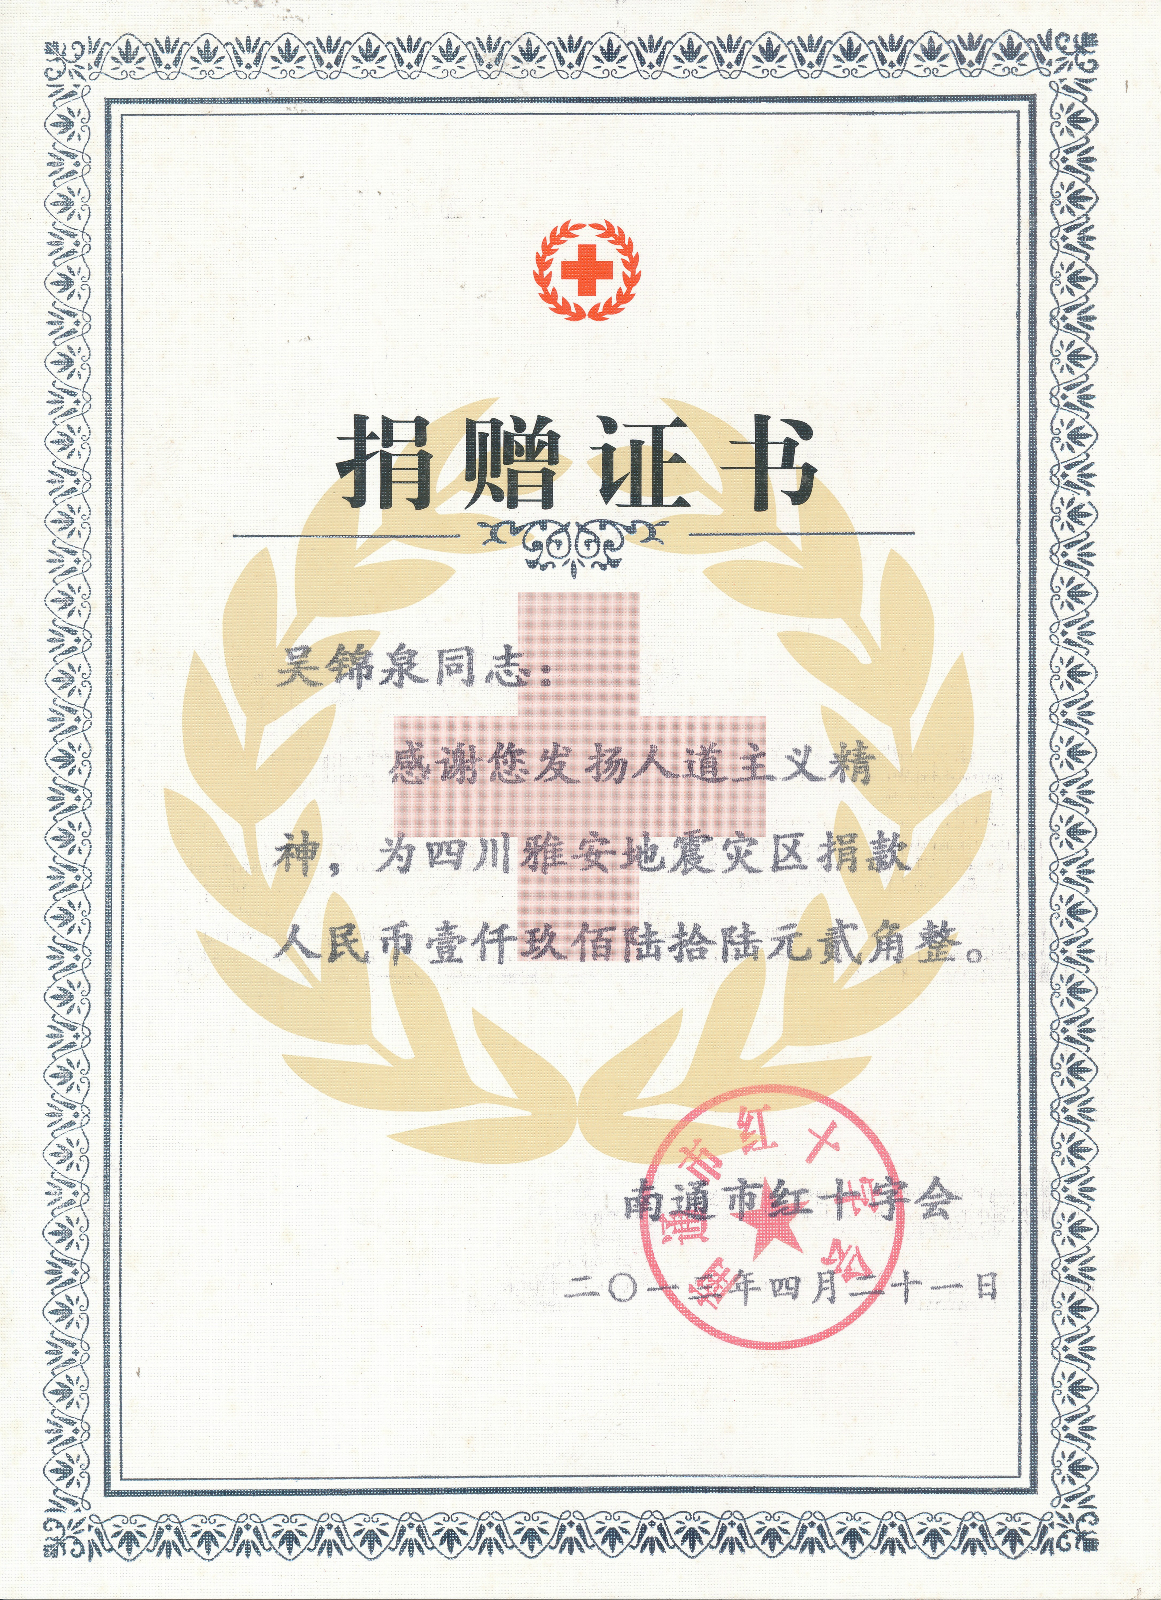 吴锦泉玉树地震捐款捐赠证书